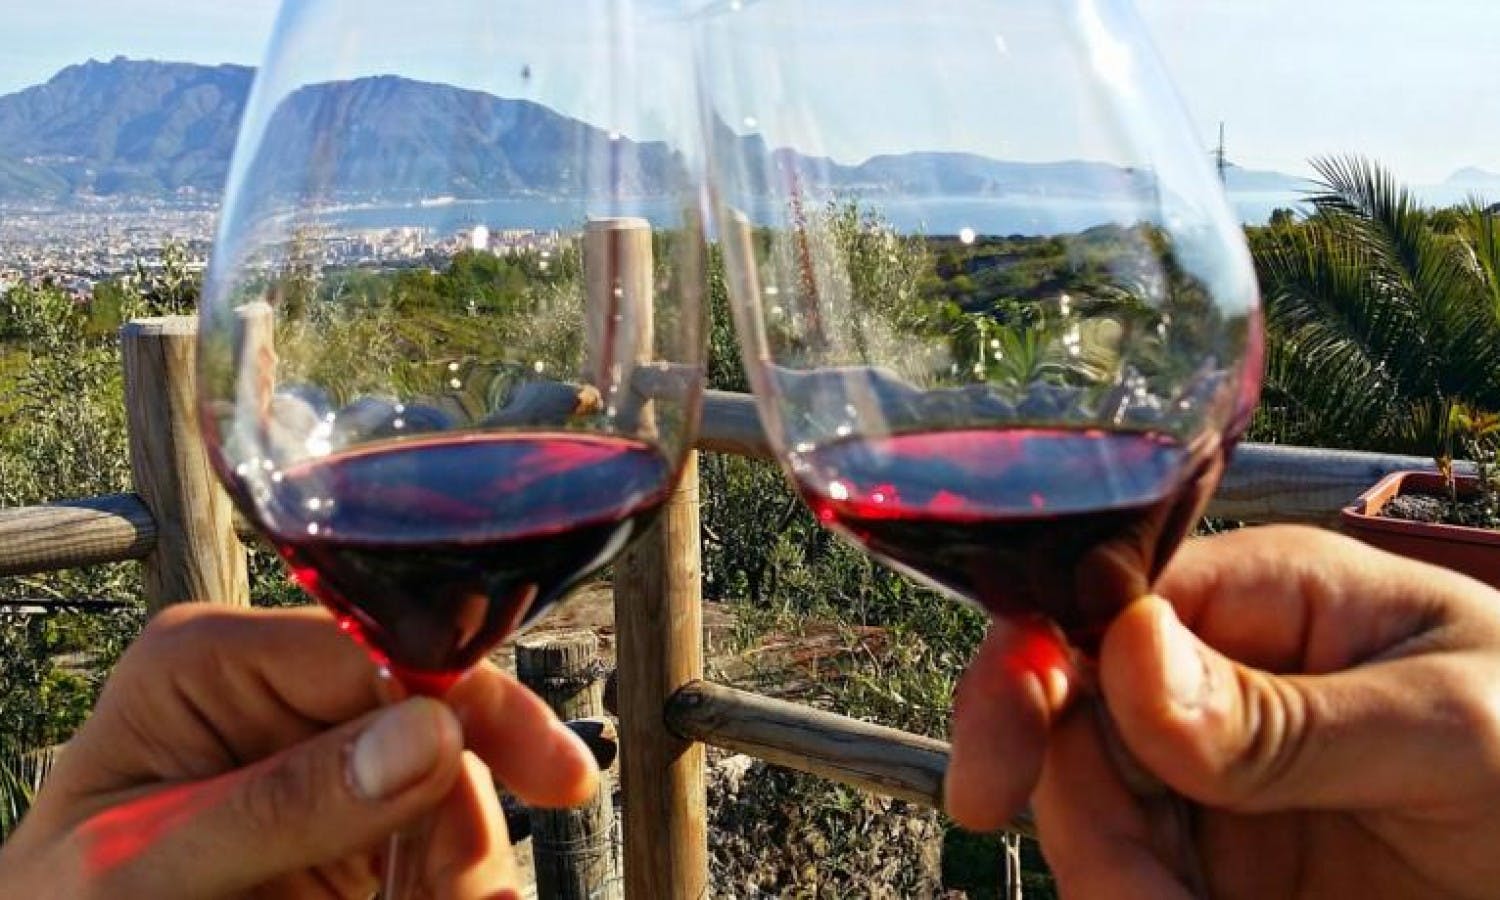 Experiencia de cata de vinos en el Monte Vesubio con almuerzo.